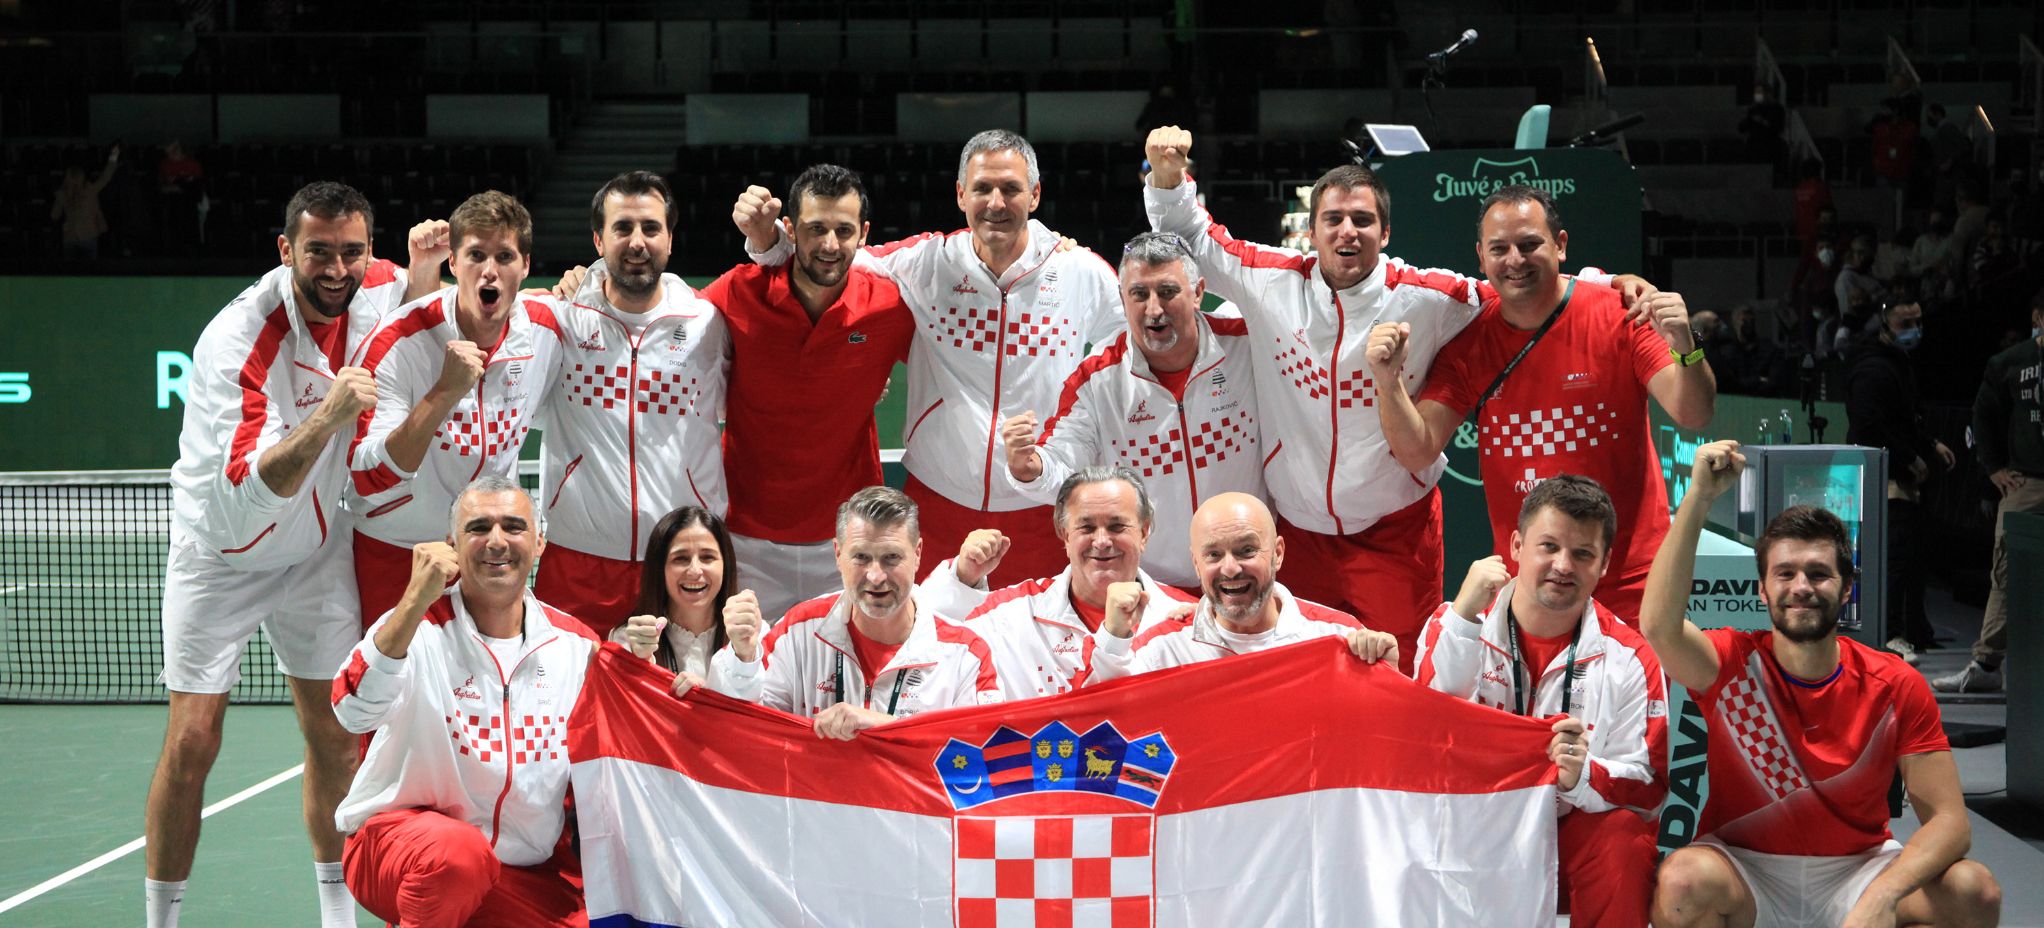 Mektić i Pavić donijeli pobjedu protiv Srbije, Hrvatska četvrti put u finalu Davis Cupa!